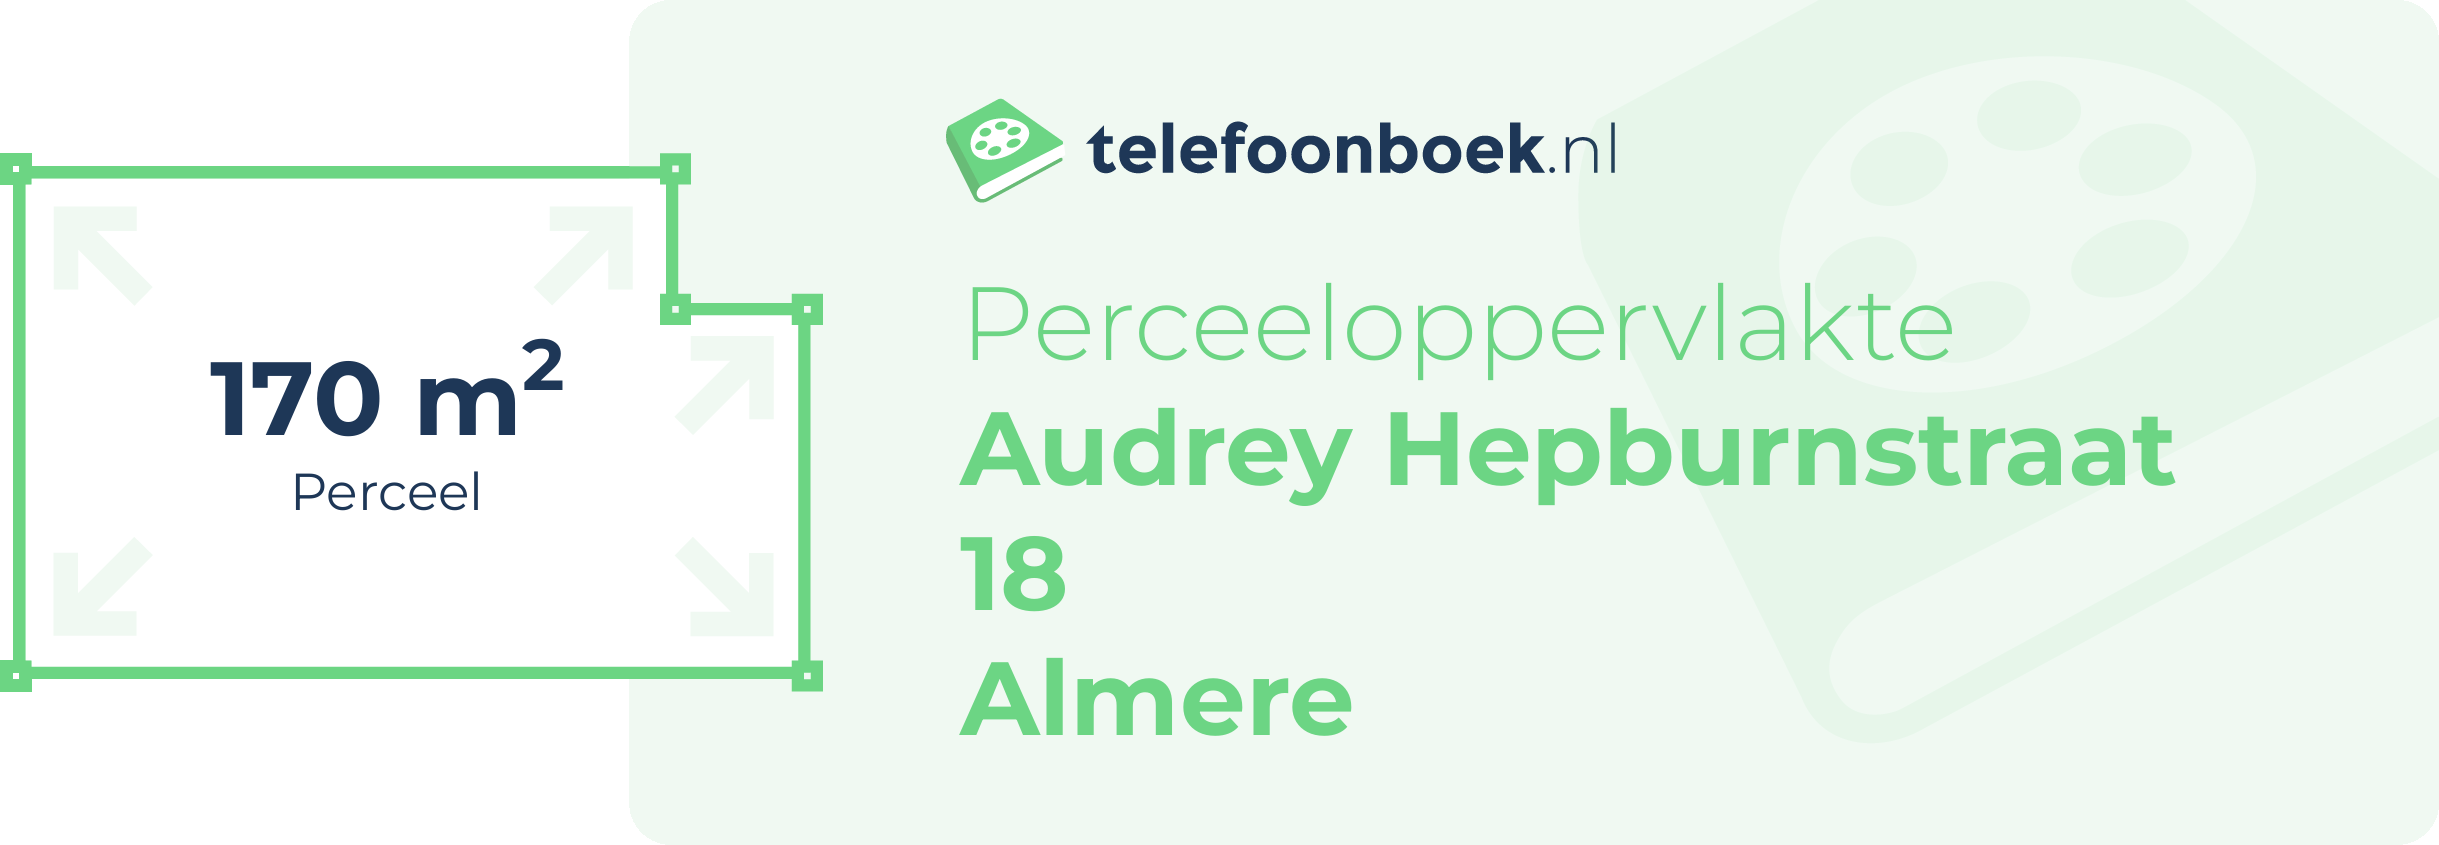 Perceeloppervlakte Audrey Hepburnstraat 18 Almere